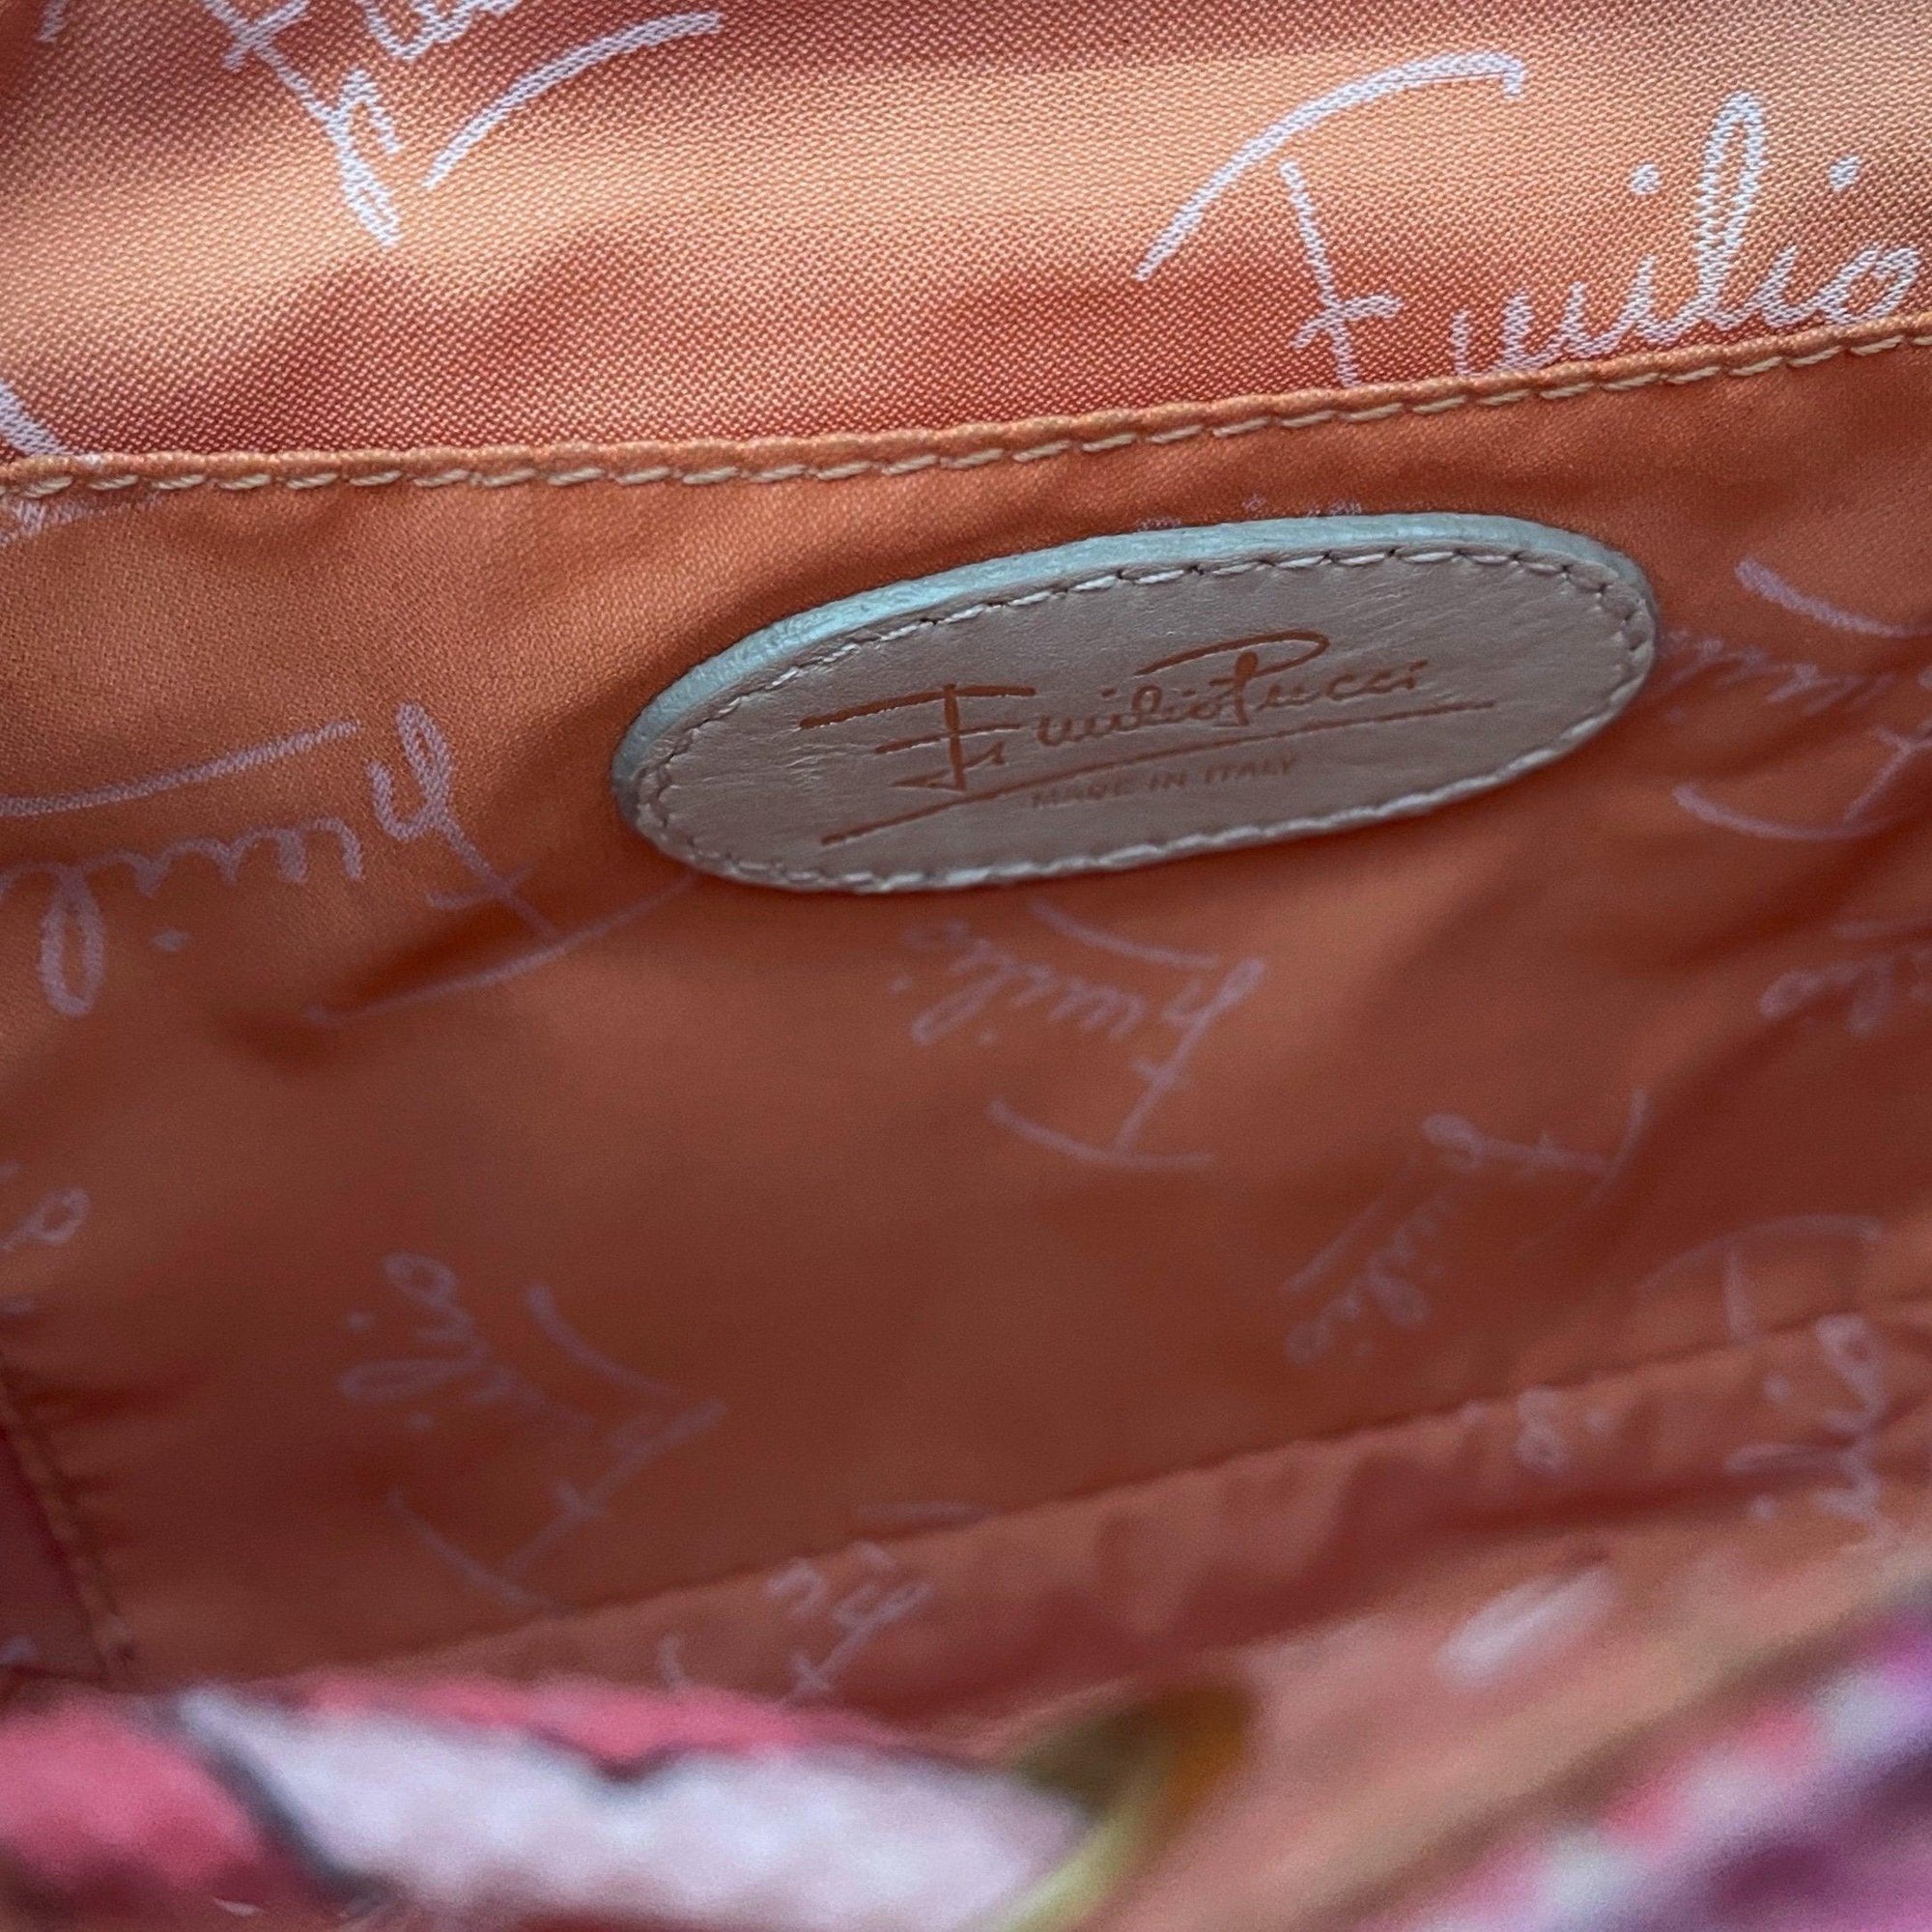 Pucci Pink Print Canvas Shoulder Bag - Handbags